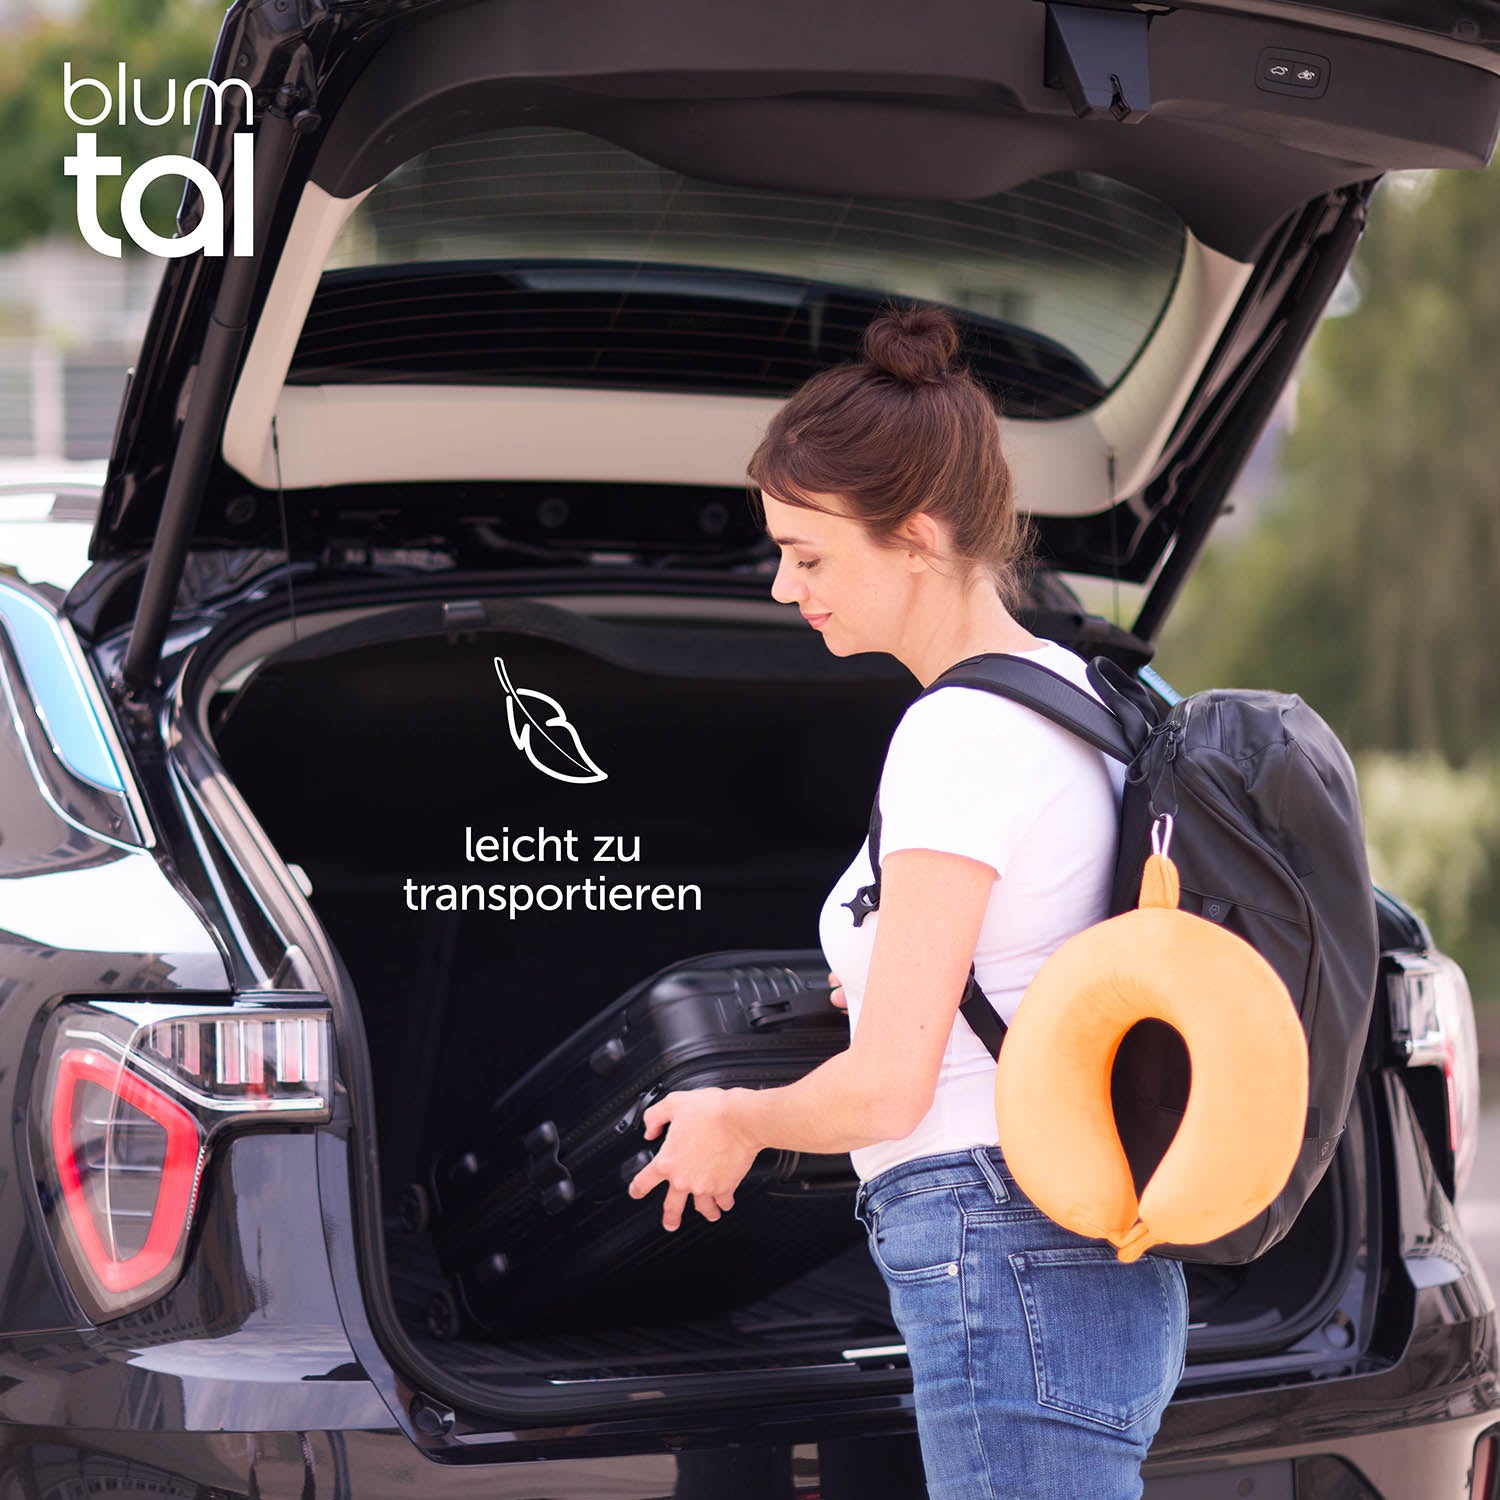 Frau mit Rucksack und orangenem Nackenkissen am offenen Kofferraum eines Autos.